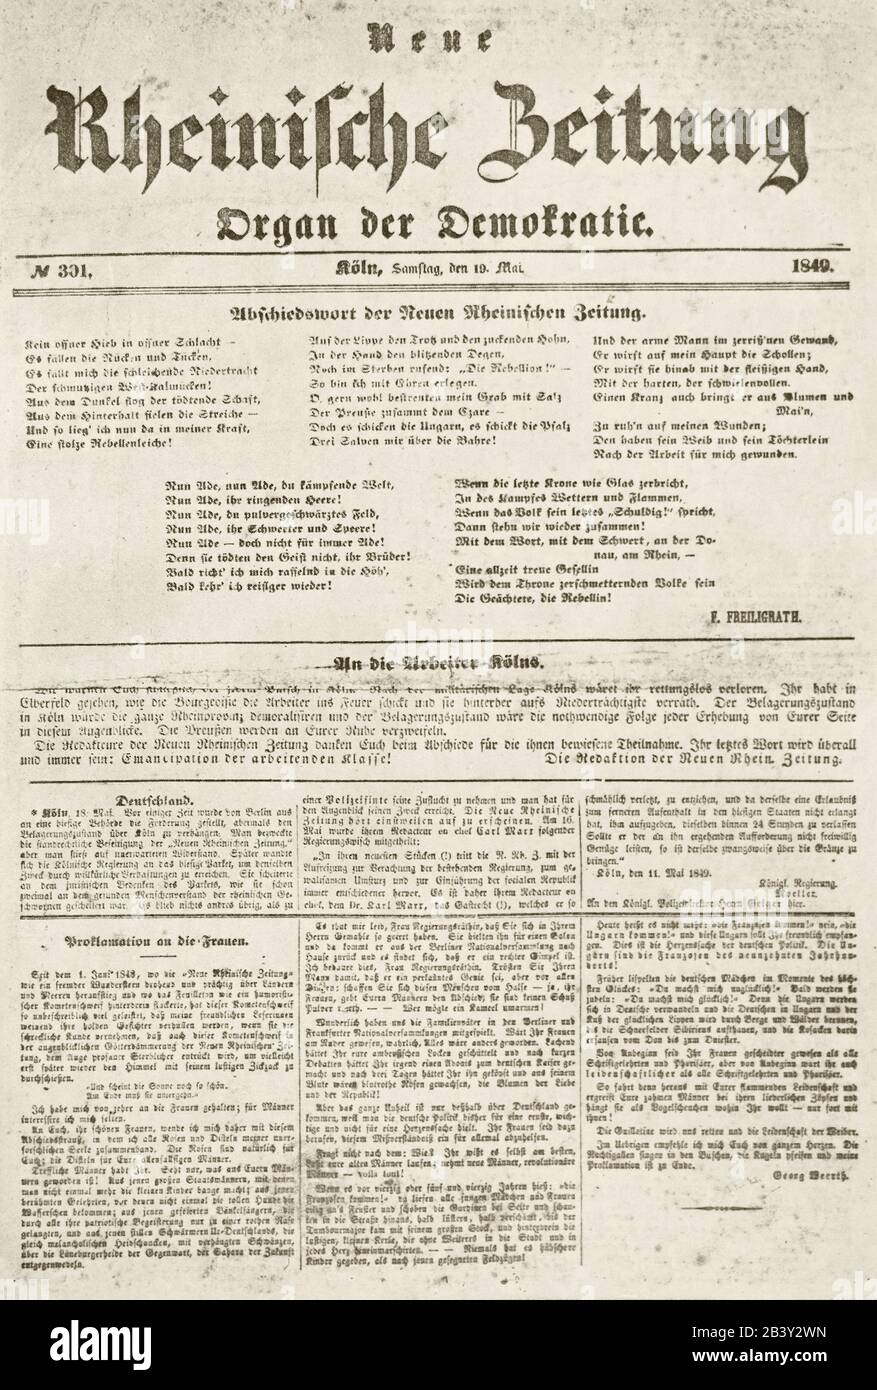 Farewell issue of Neue Rheinische Zeitung Newspaper, May 19, 1849. Stock Photo